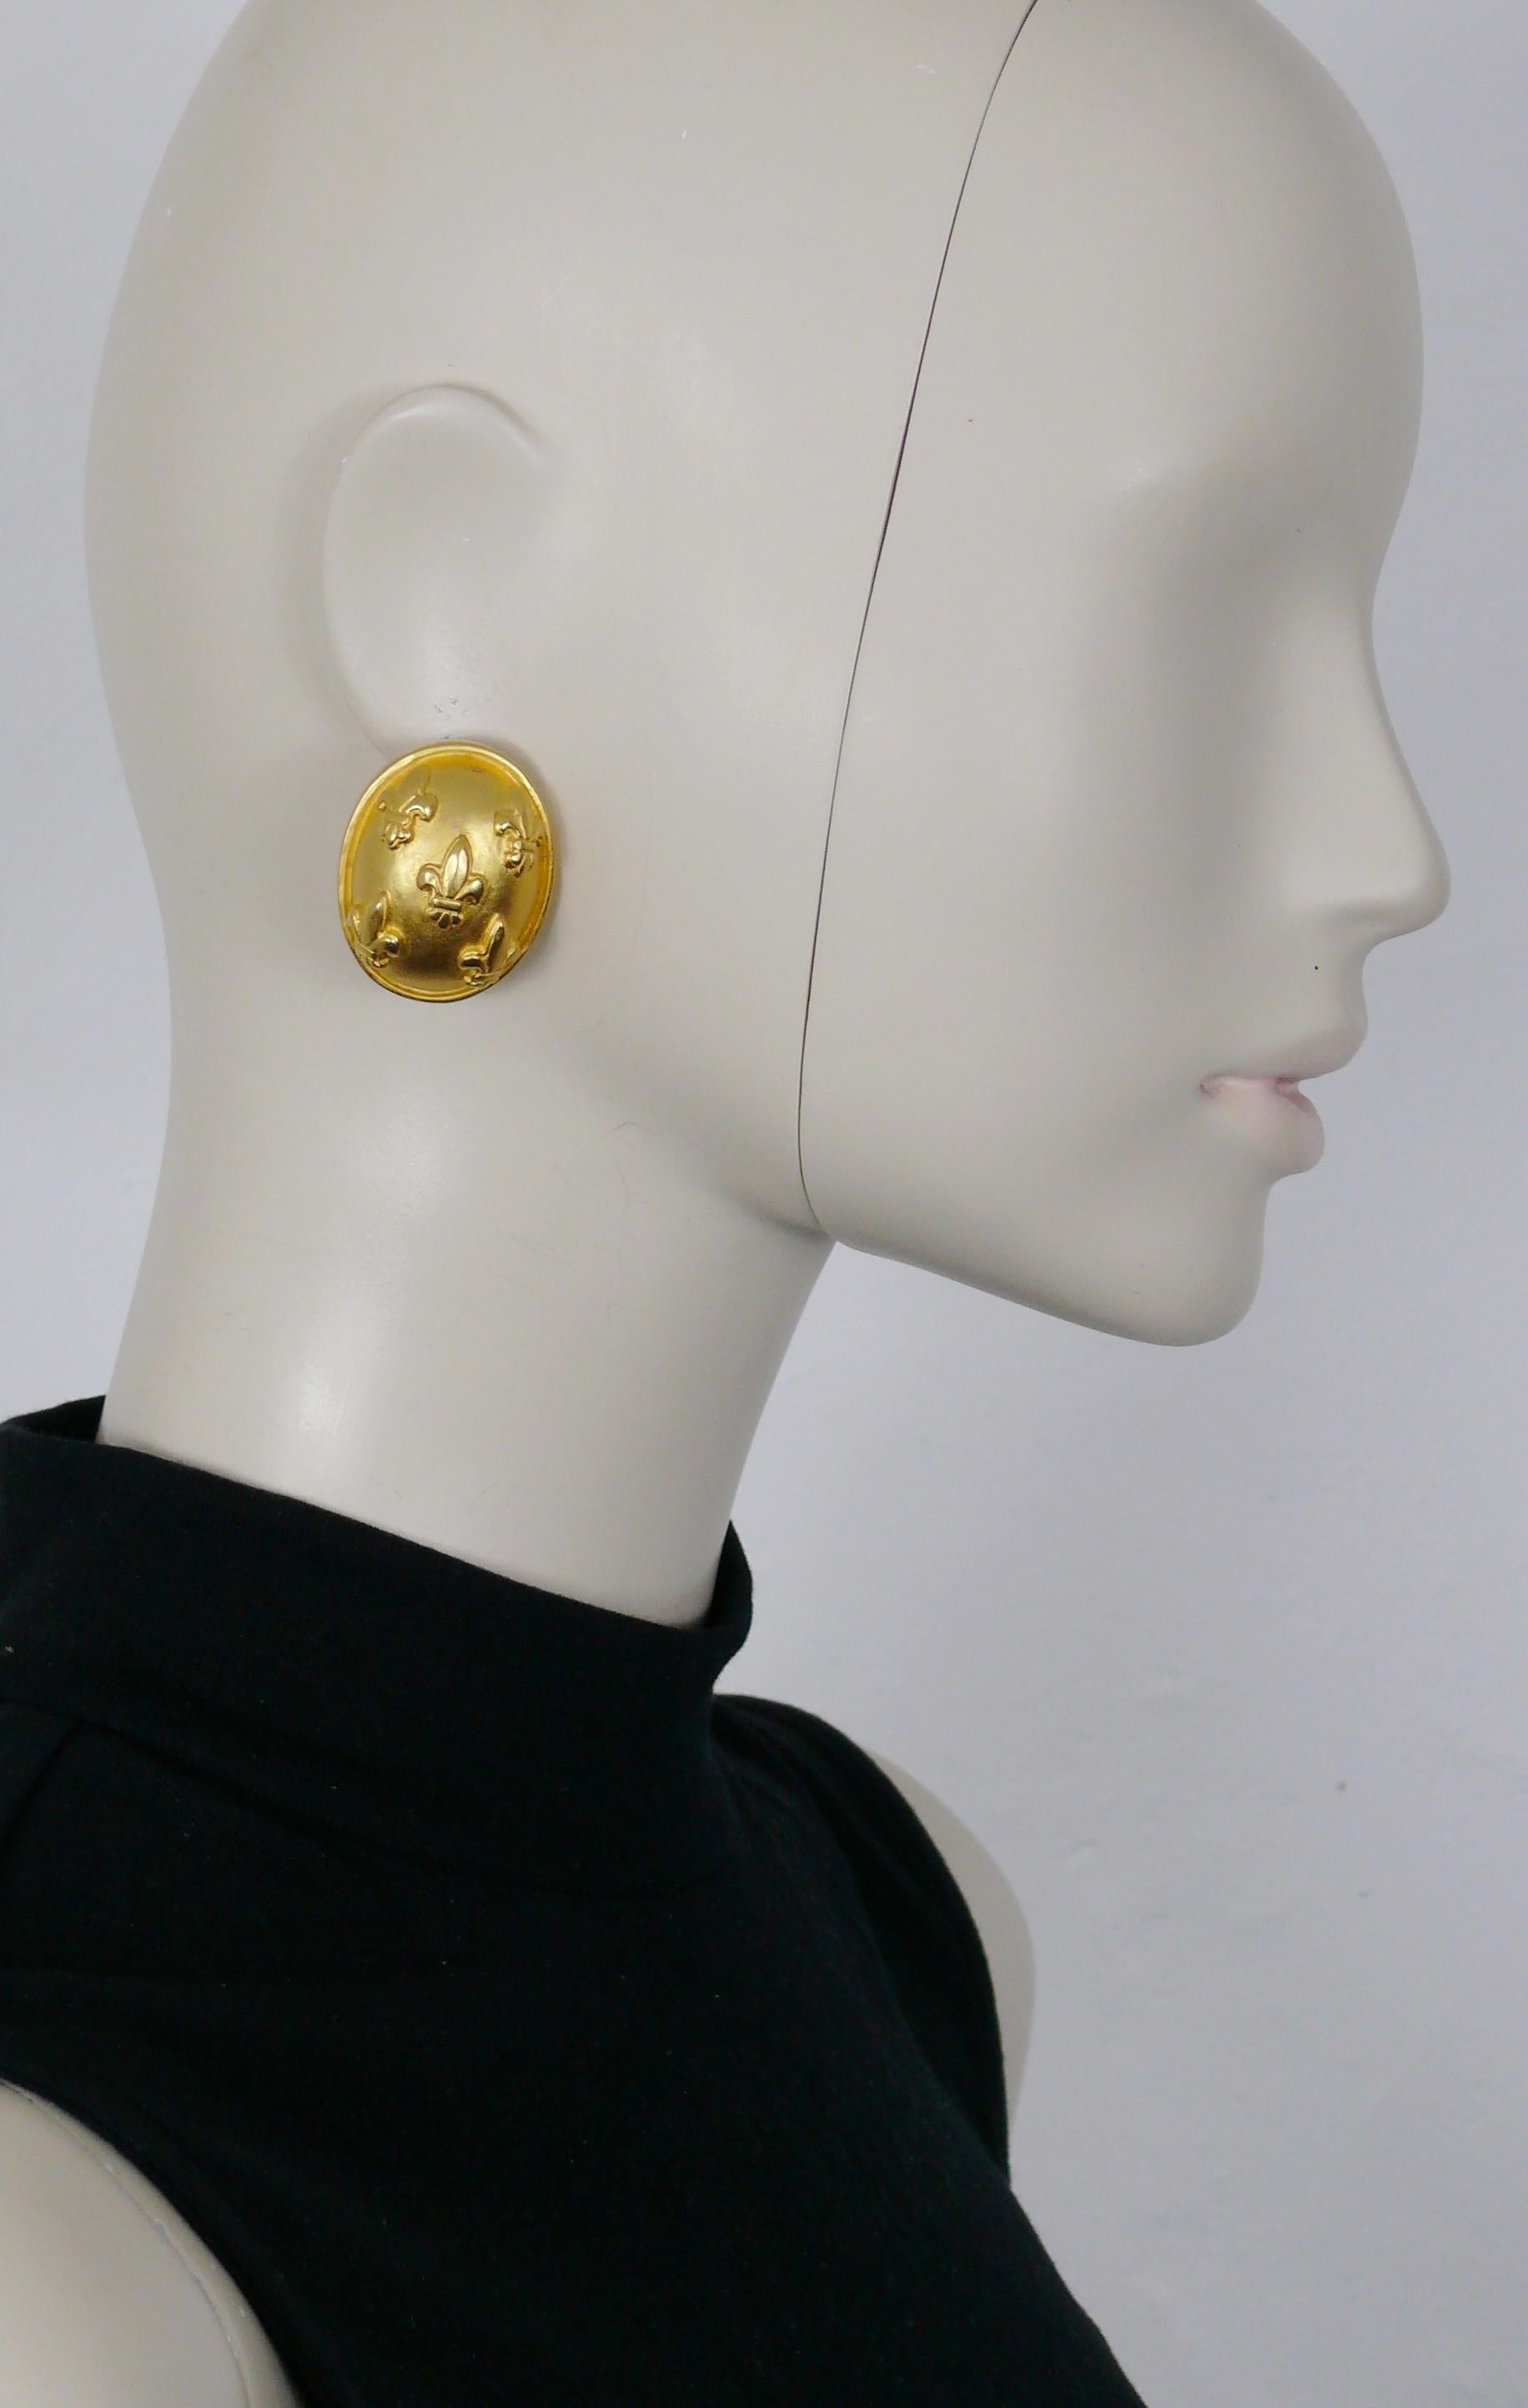 KARL LAGERFELD Vintage-Ohrringe in massiver, mattgoldener Kuppel mit Fleurs de Lys-Prägung.

Geprägtes KL.

Ungefähre Maße: Höhe ca. 3,6 cm (1,42 Zoll) / Breite ca. 2,8 cm (1,10 Zoll).

ANMERKUNGEN
- Es handelt sich um einen gebrauchten